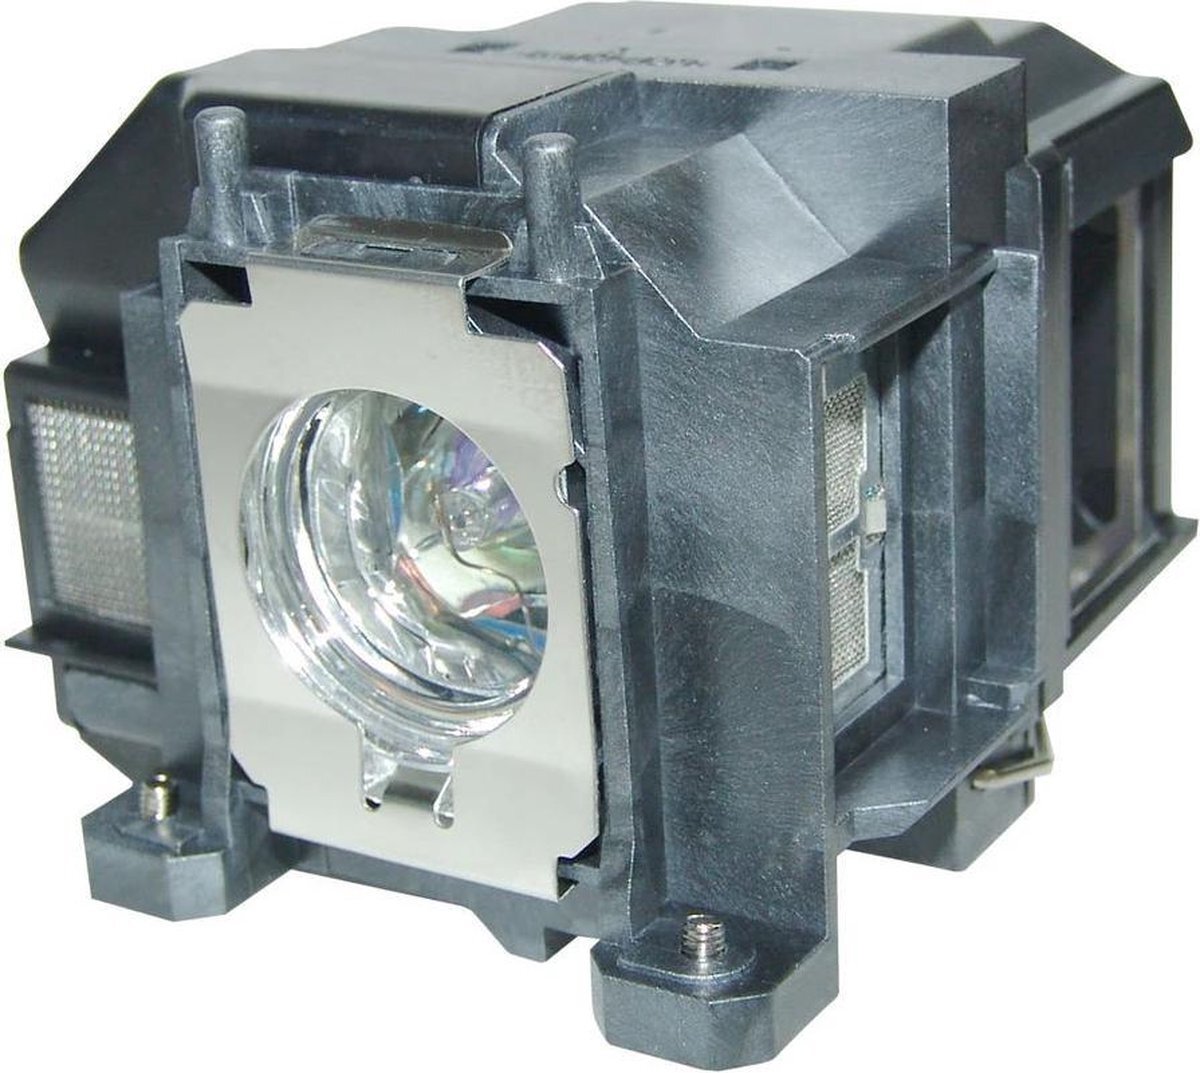 QualityLamp EPSON H433A beamerlamp LP67 / V13H010L67, bevat originele P-VIP lamp. Prestaties gelijk aan origineel.